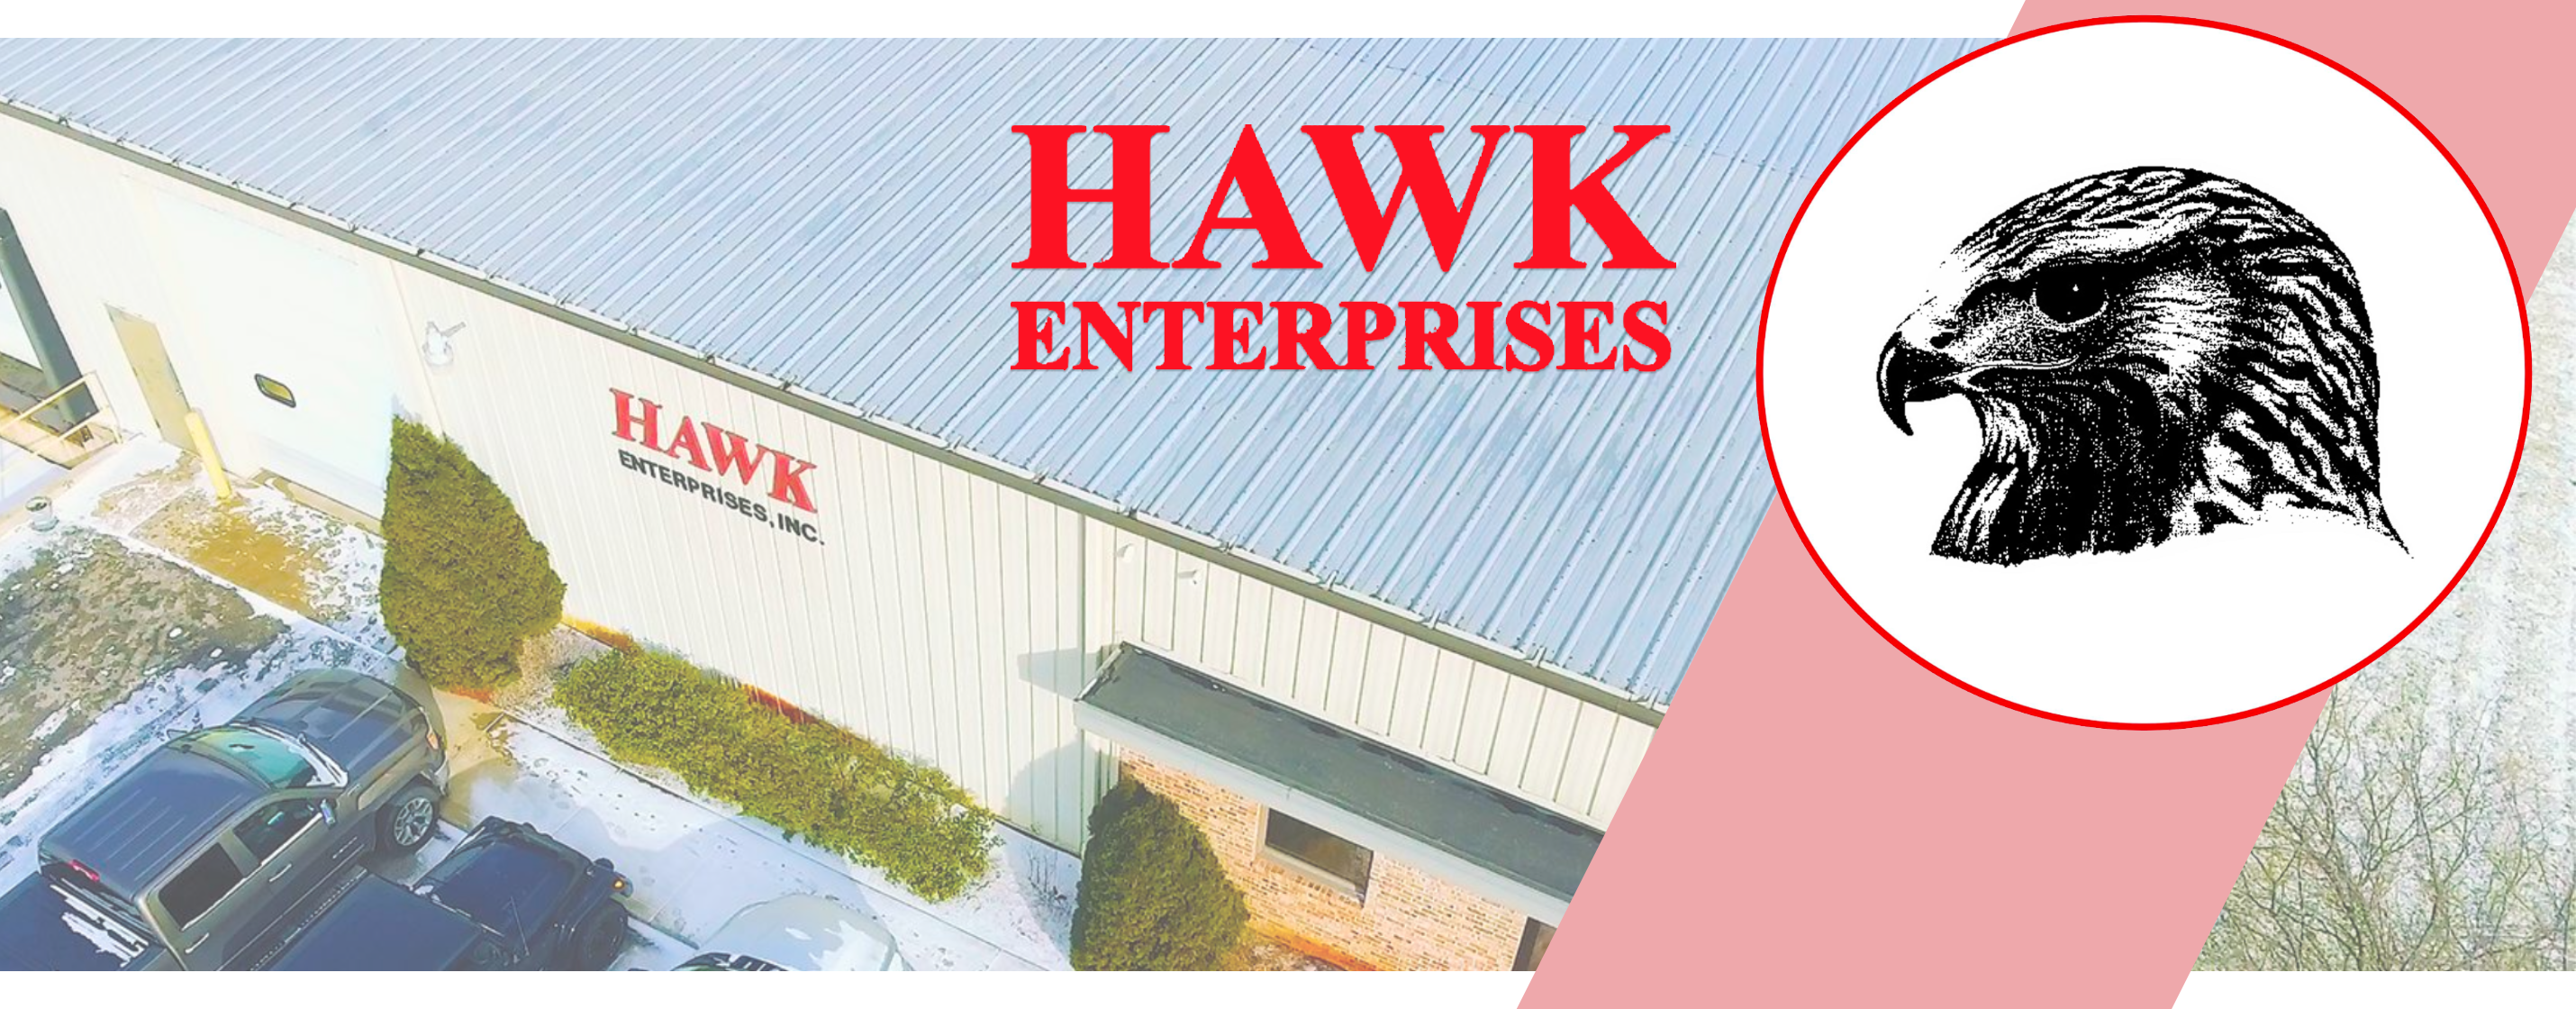 Hawk_Enterprises_Mobile_8e97a489-6de9-410d-a3c7-dcbbfb0463ae.png